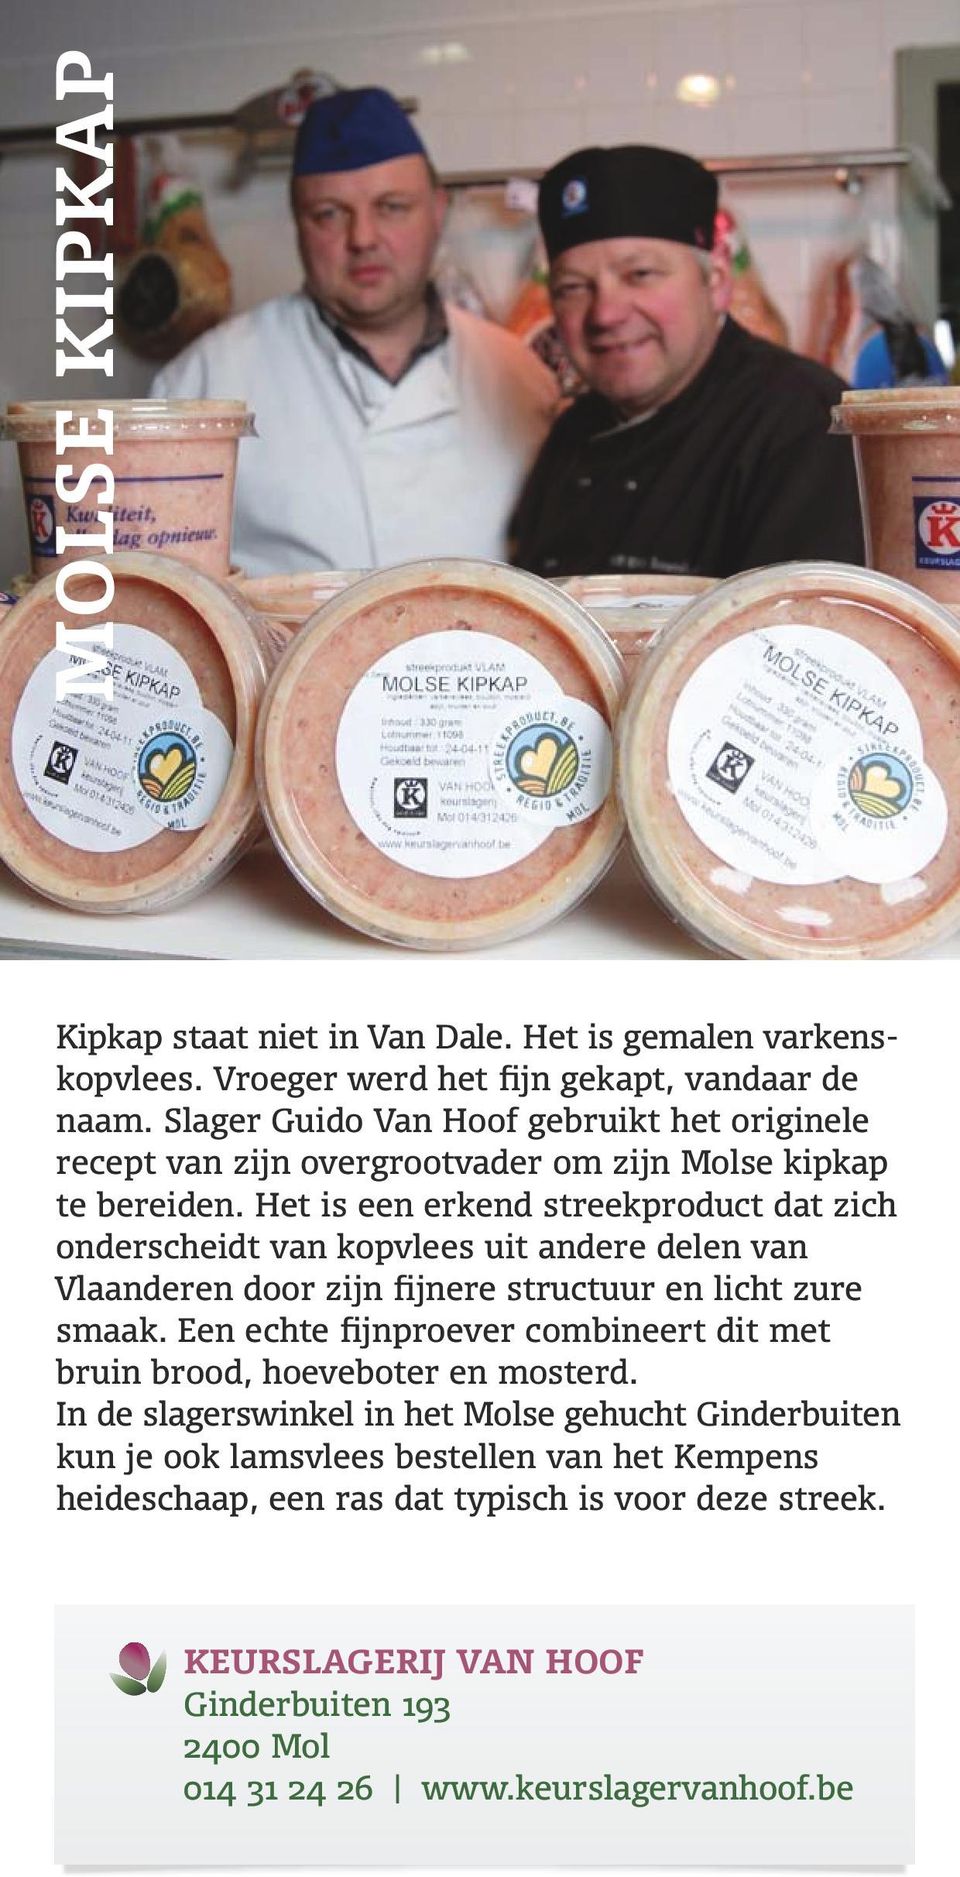 Het is een erkend streekproduct dat zich onderscheidt van kopvlees uit andere delen van Vlaanderen door zijn fijnere structuur en licht zure smaak.